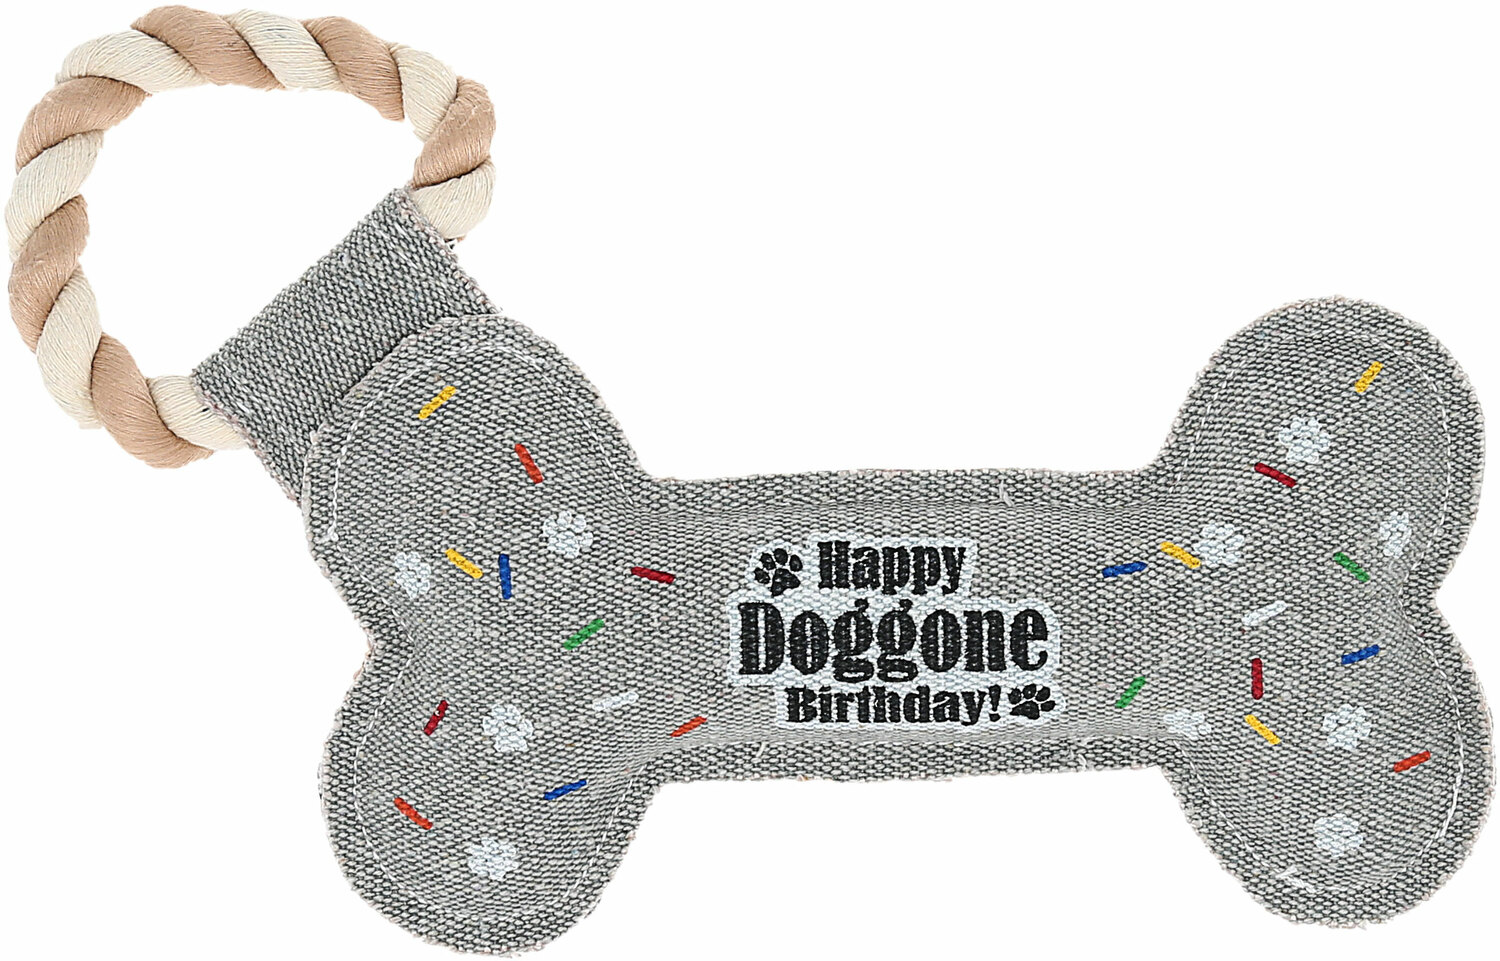 Birthday Bone by Pavilion's Pets - Birthday Bone - 11" Canvas Dog Toy on Rope